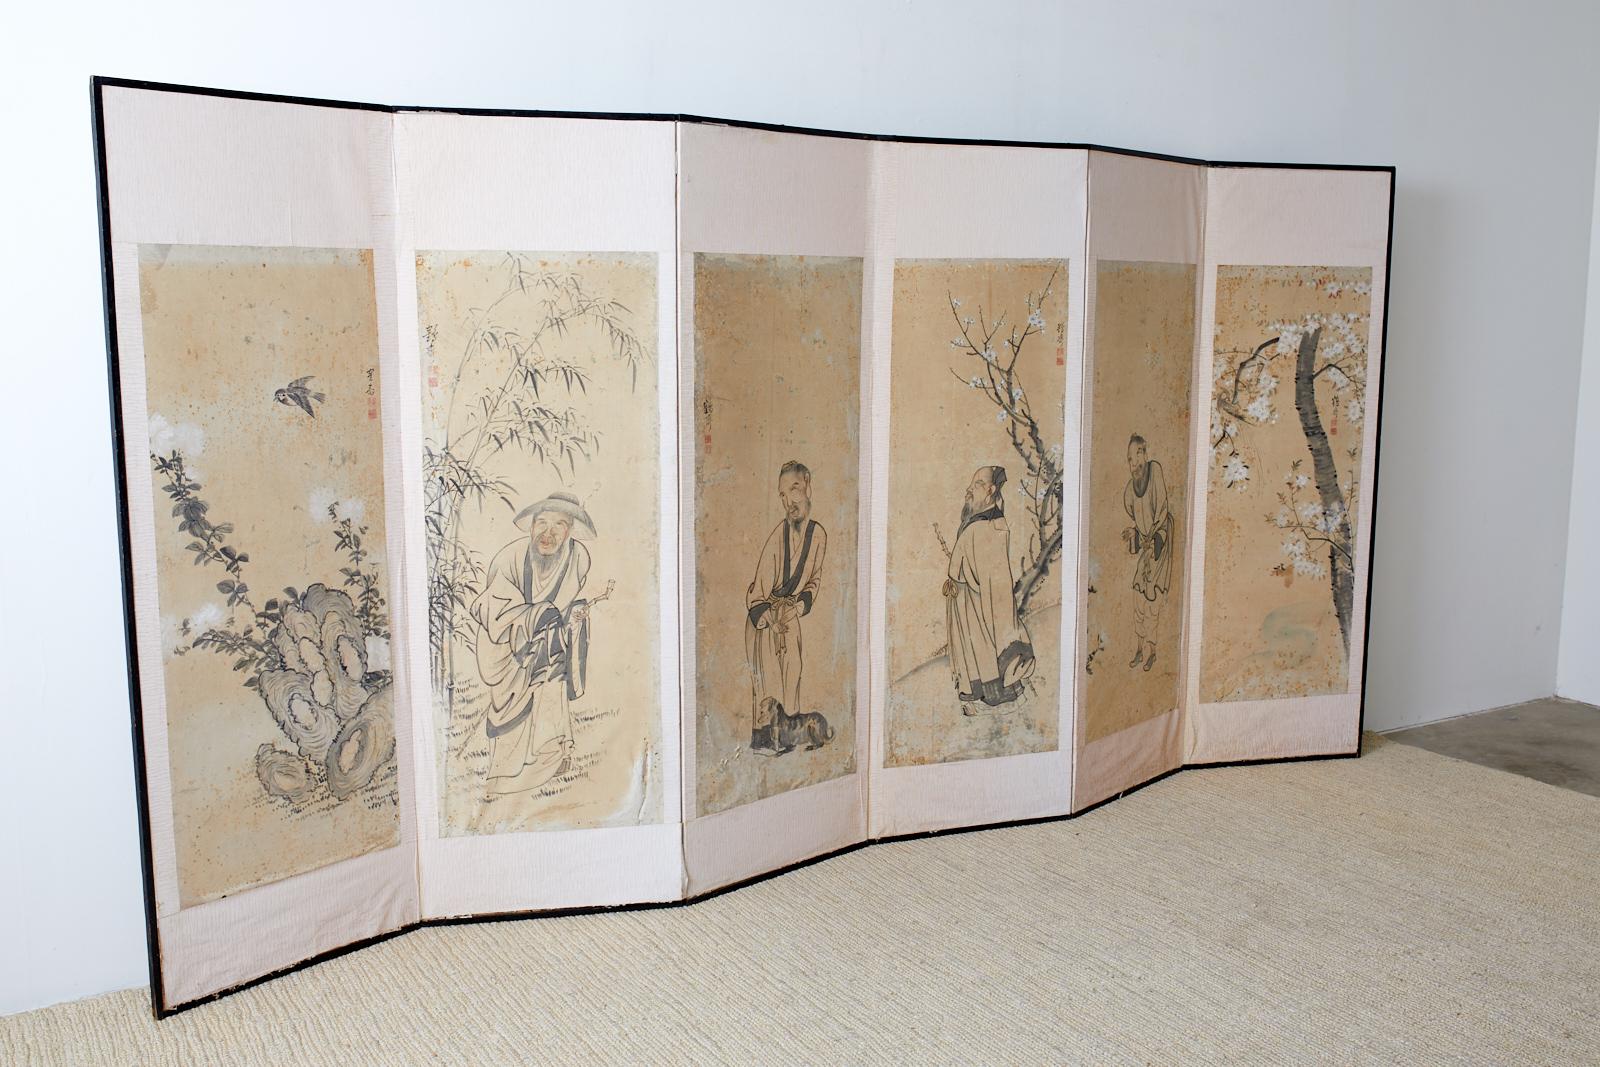 Koreanischer Paravent aus der Meiji-Zeit mit sechs Tafeln, auf denen legendäre chinesische Figuren auf einzelnen Tafeln mit Vögeln und blühenden Blumen dargestellt sind. Jede Tafel ist auf Japanisch mit Kakusai (Atelier des Kranichs) und einem